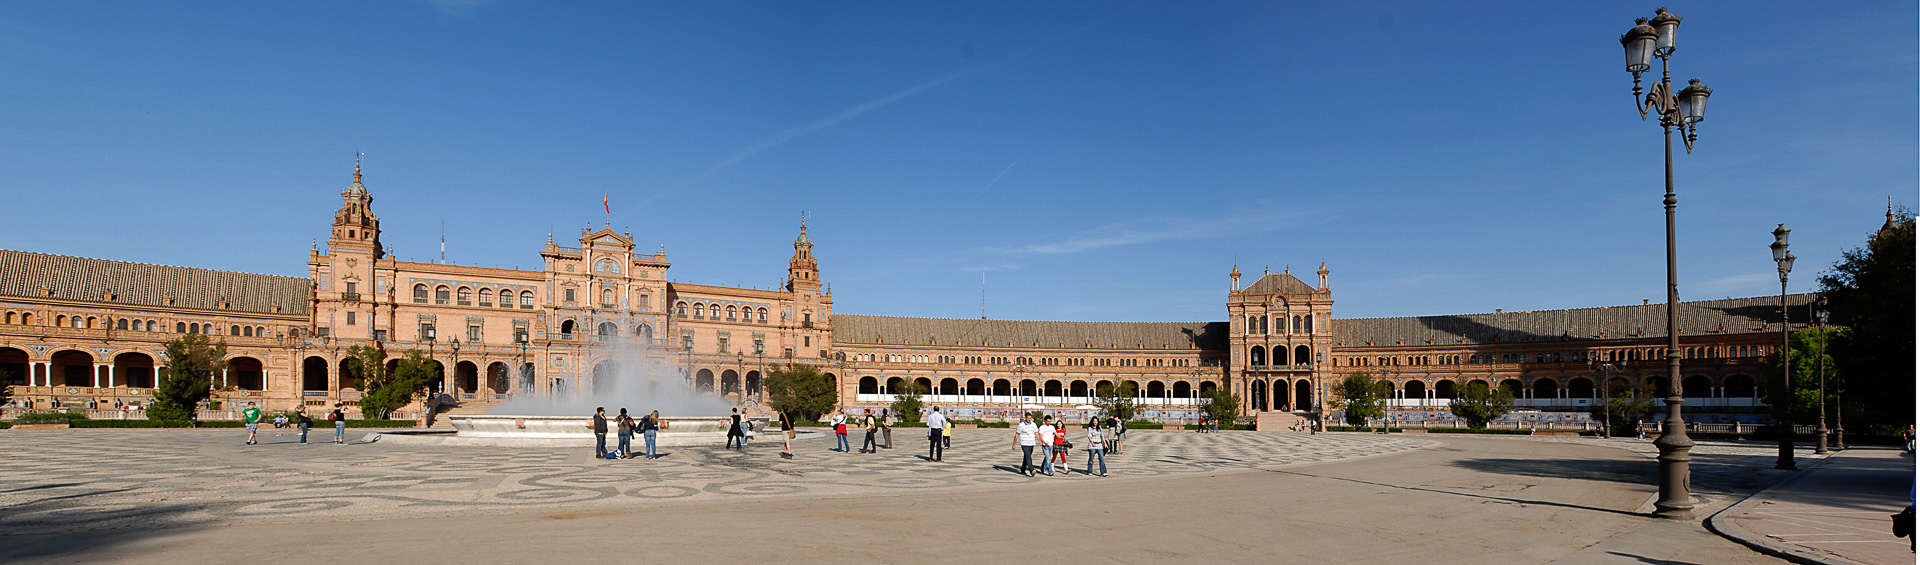 Plaza de espana.